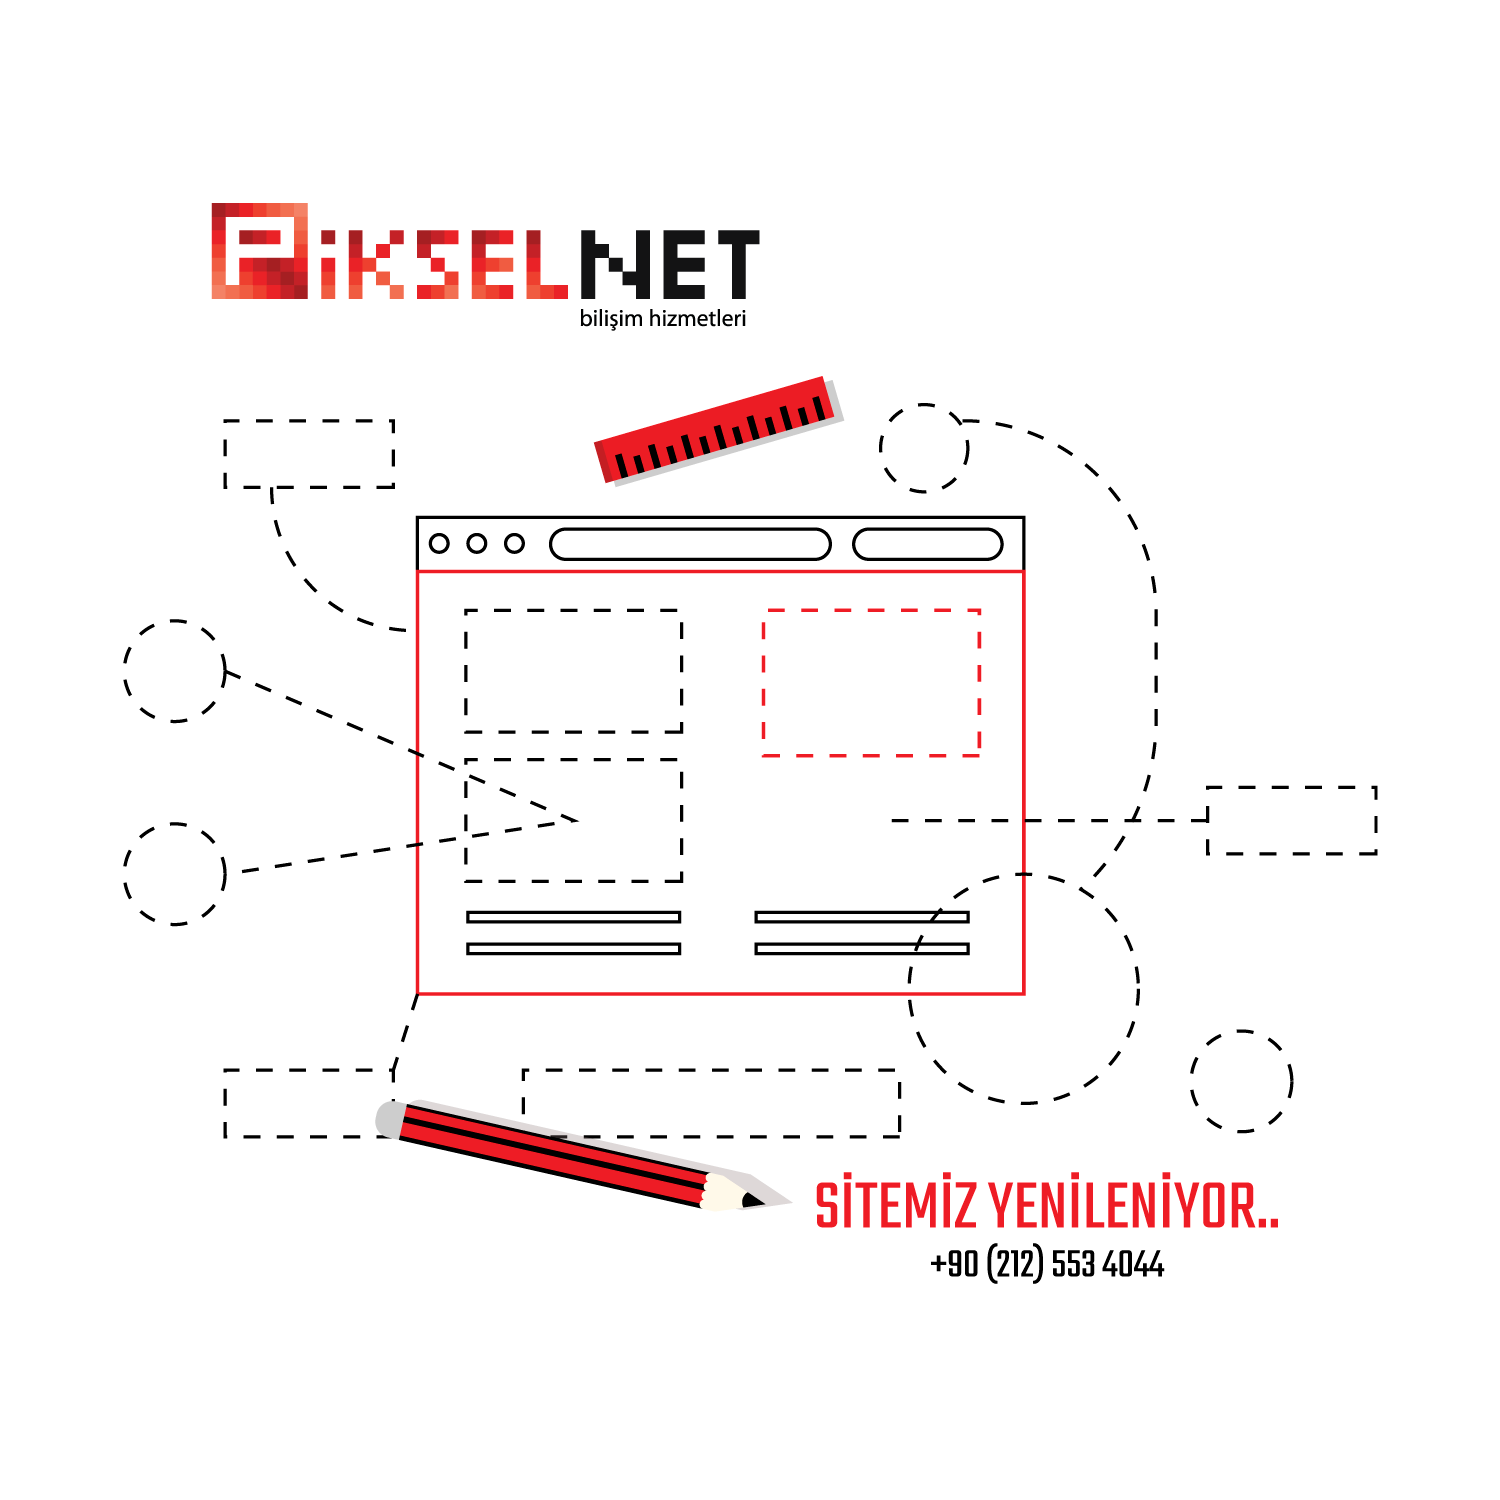 PikselNet - Web Sitemiz Yenileniyor